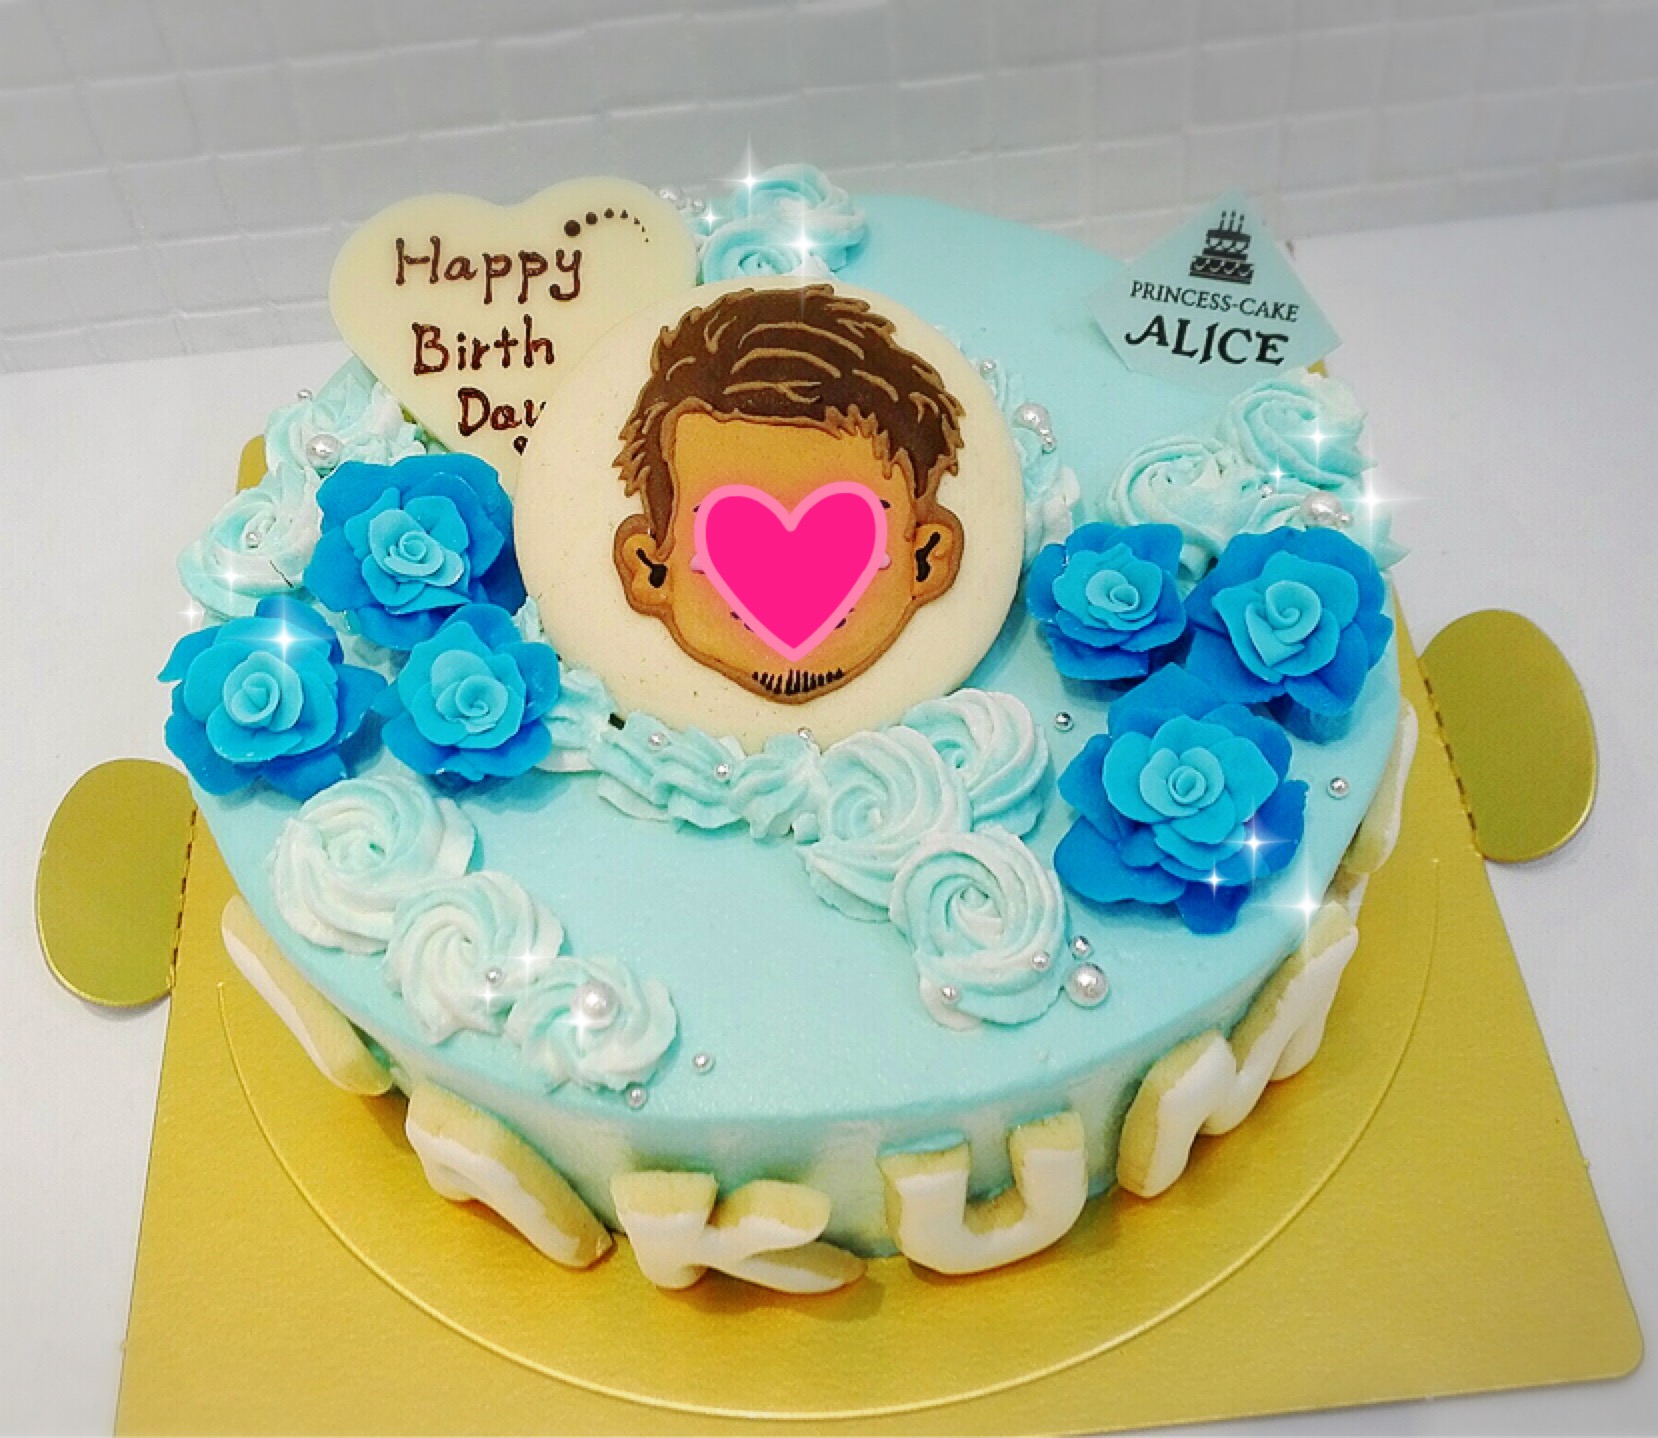 青いバラのケーキ 大阪なんば オーダーケーキ 大阪でオーダーケーキなら大阪ミナミ なんば 心斎橋の宅配ケーキ プリンセスケーキアリス